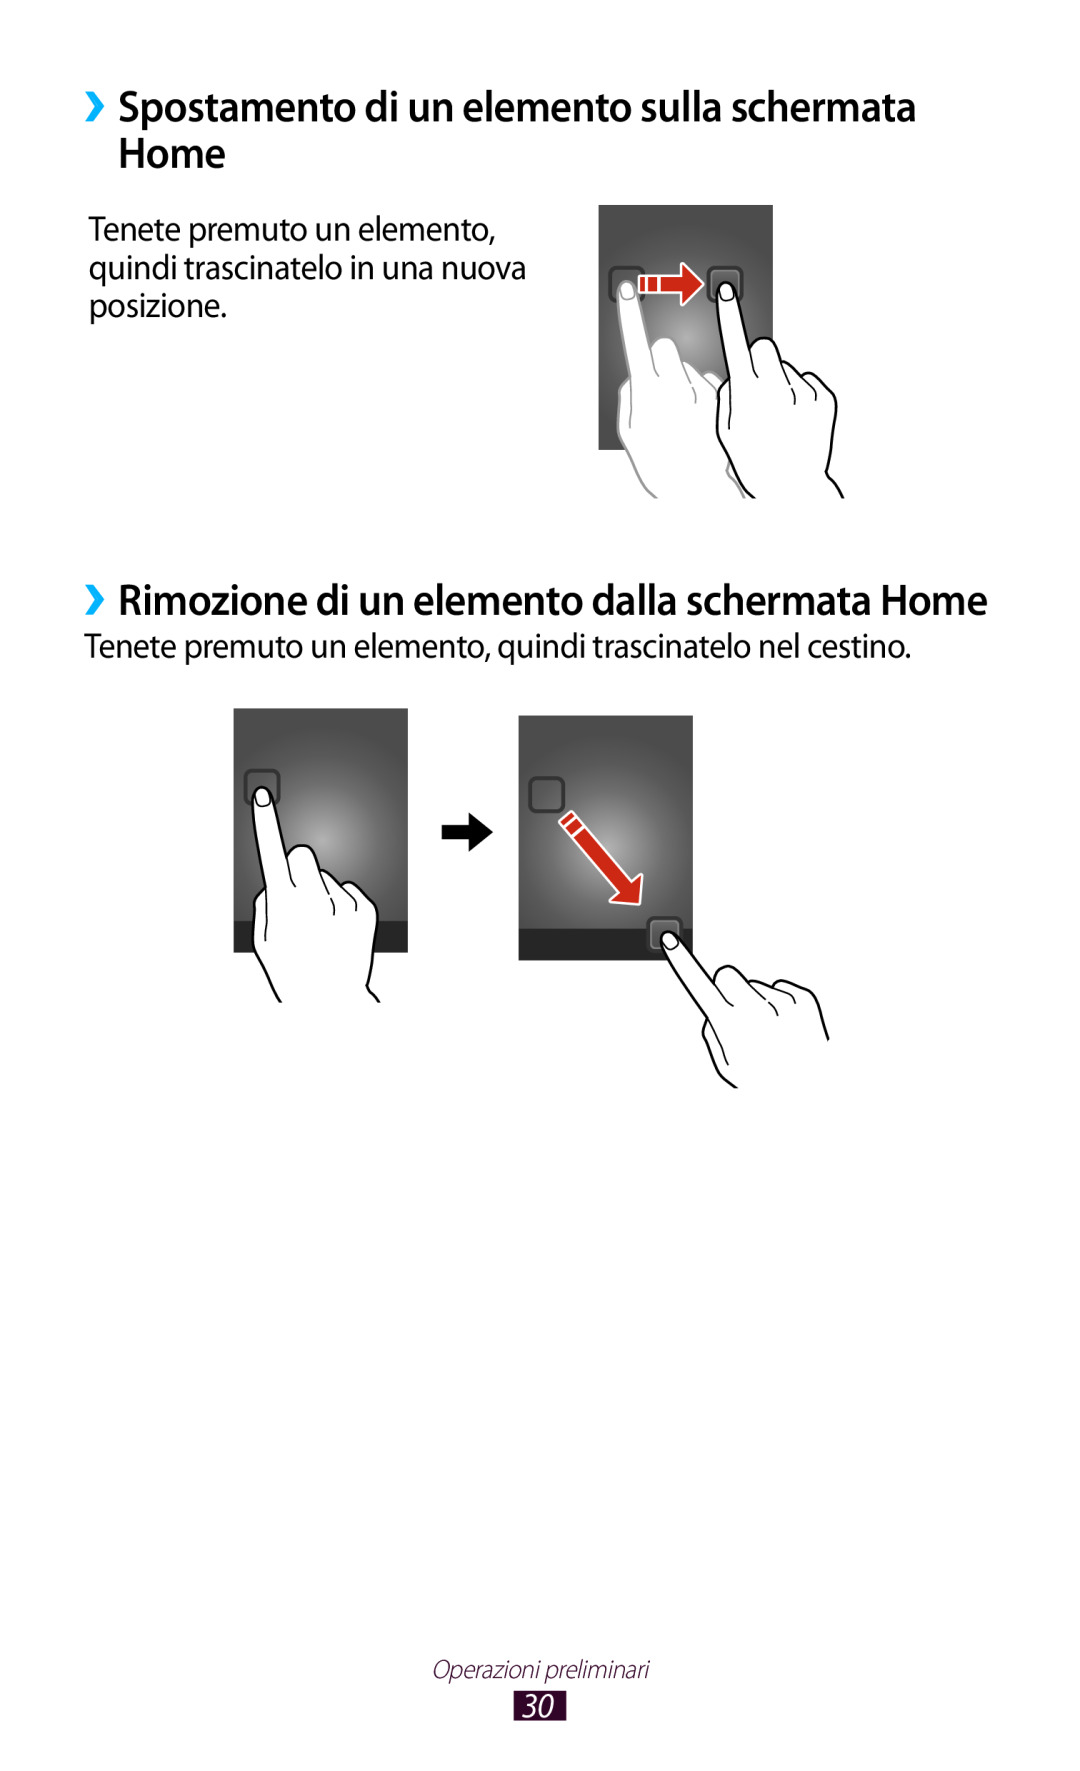 Samsung GT-S7560UWAOMN ››Spostamento di un elemento sulla schermata Home, ››Rimozione di un elemento dalla schermata Home 